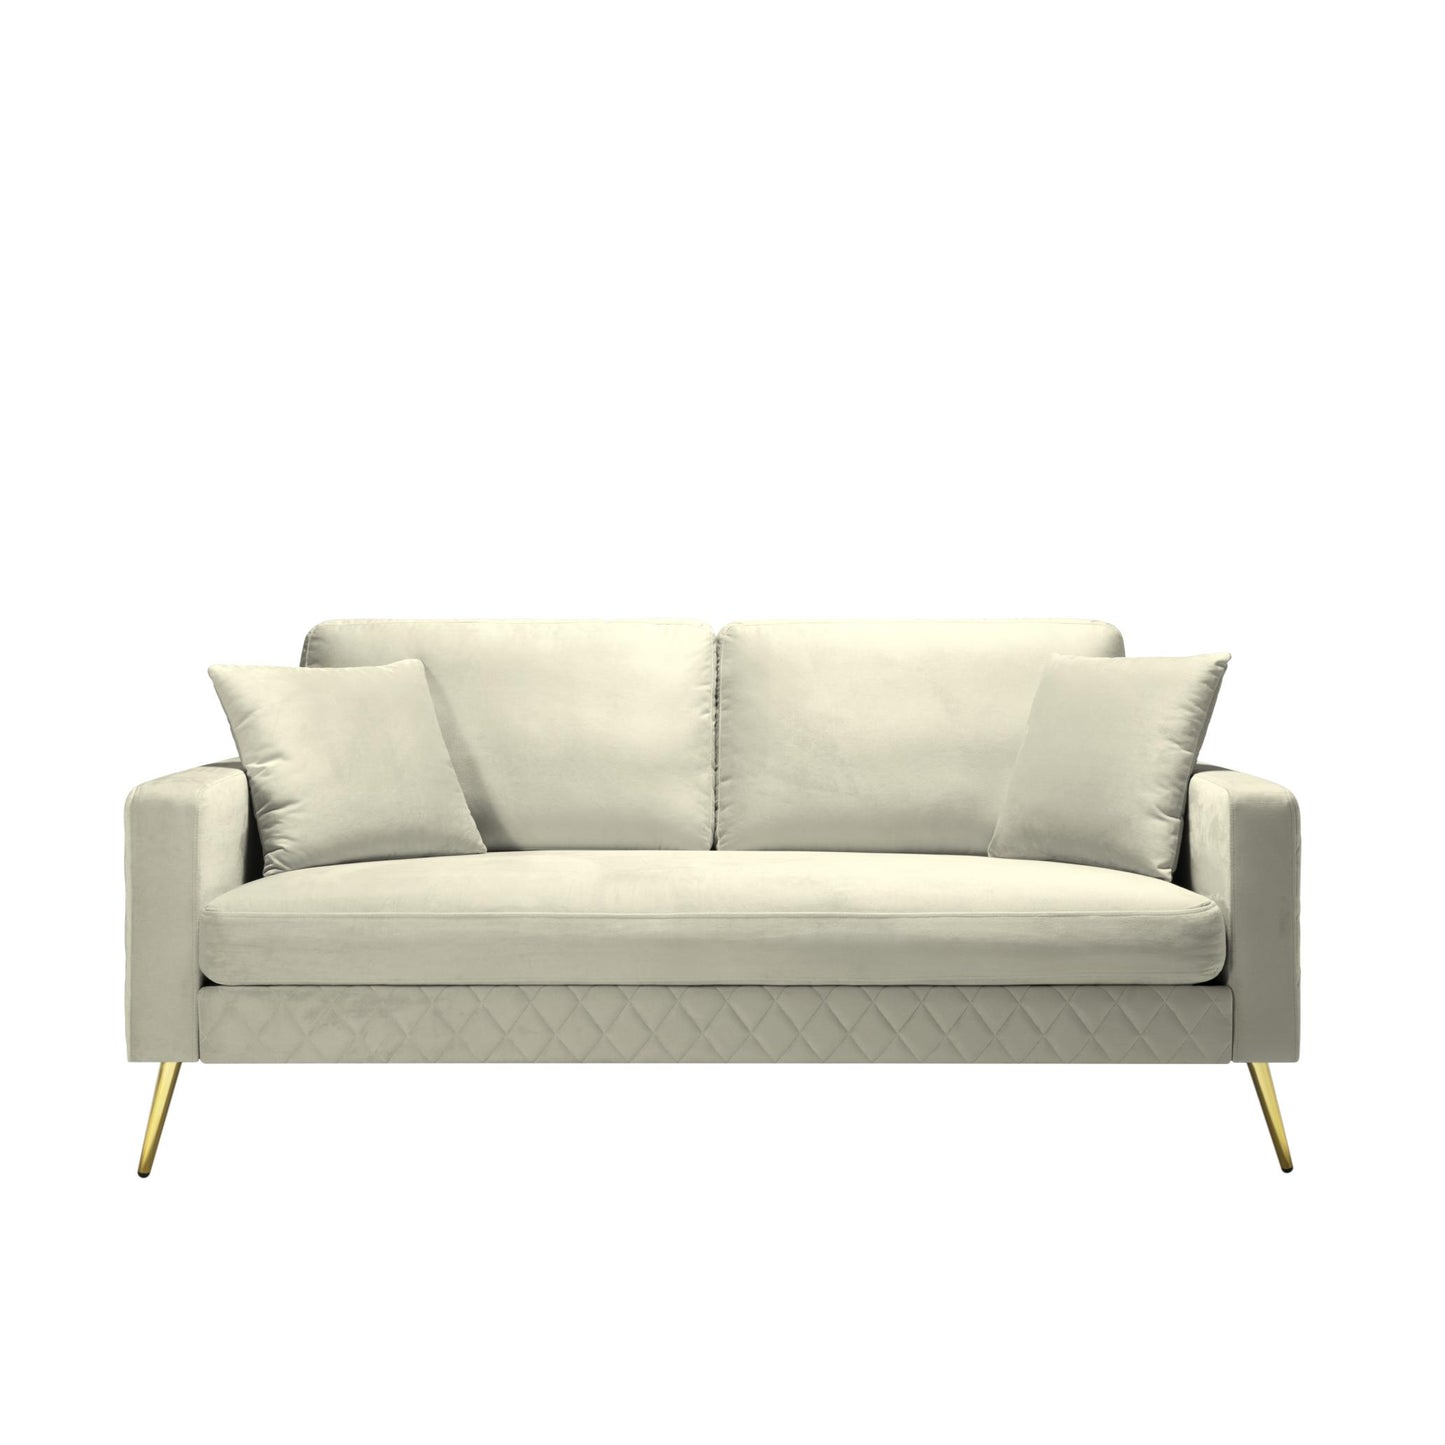 72.4” Square Arm Sofa